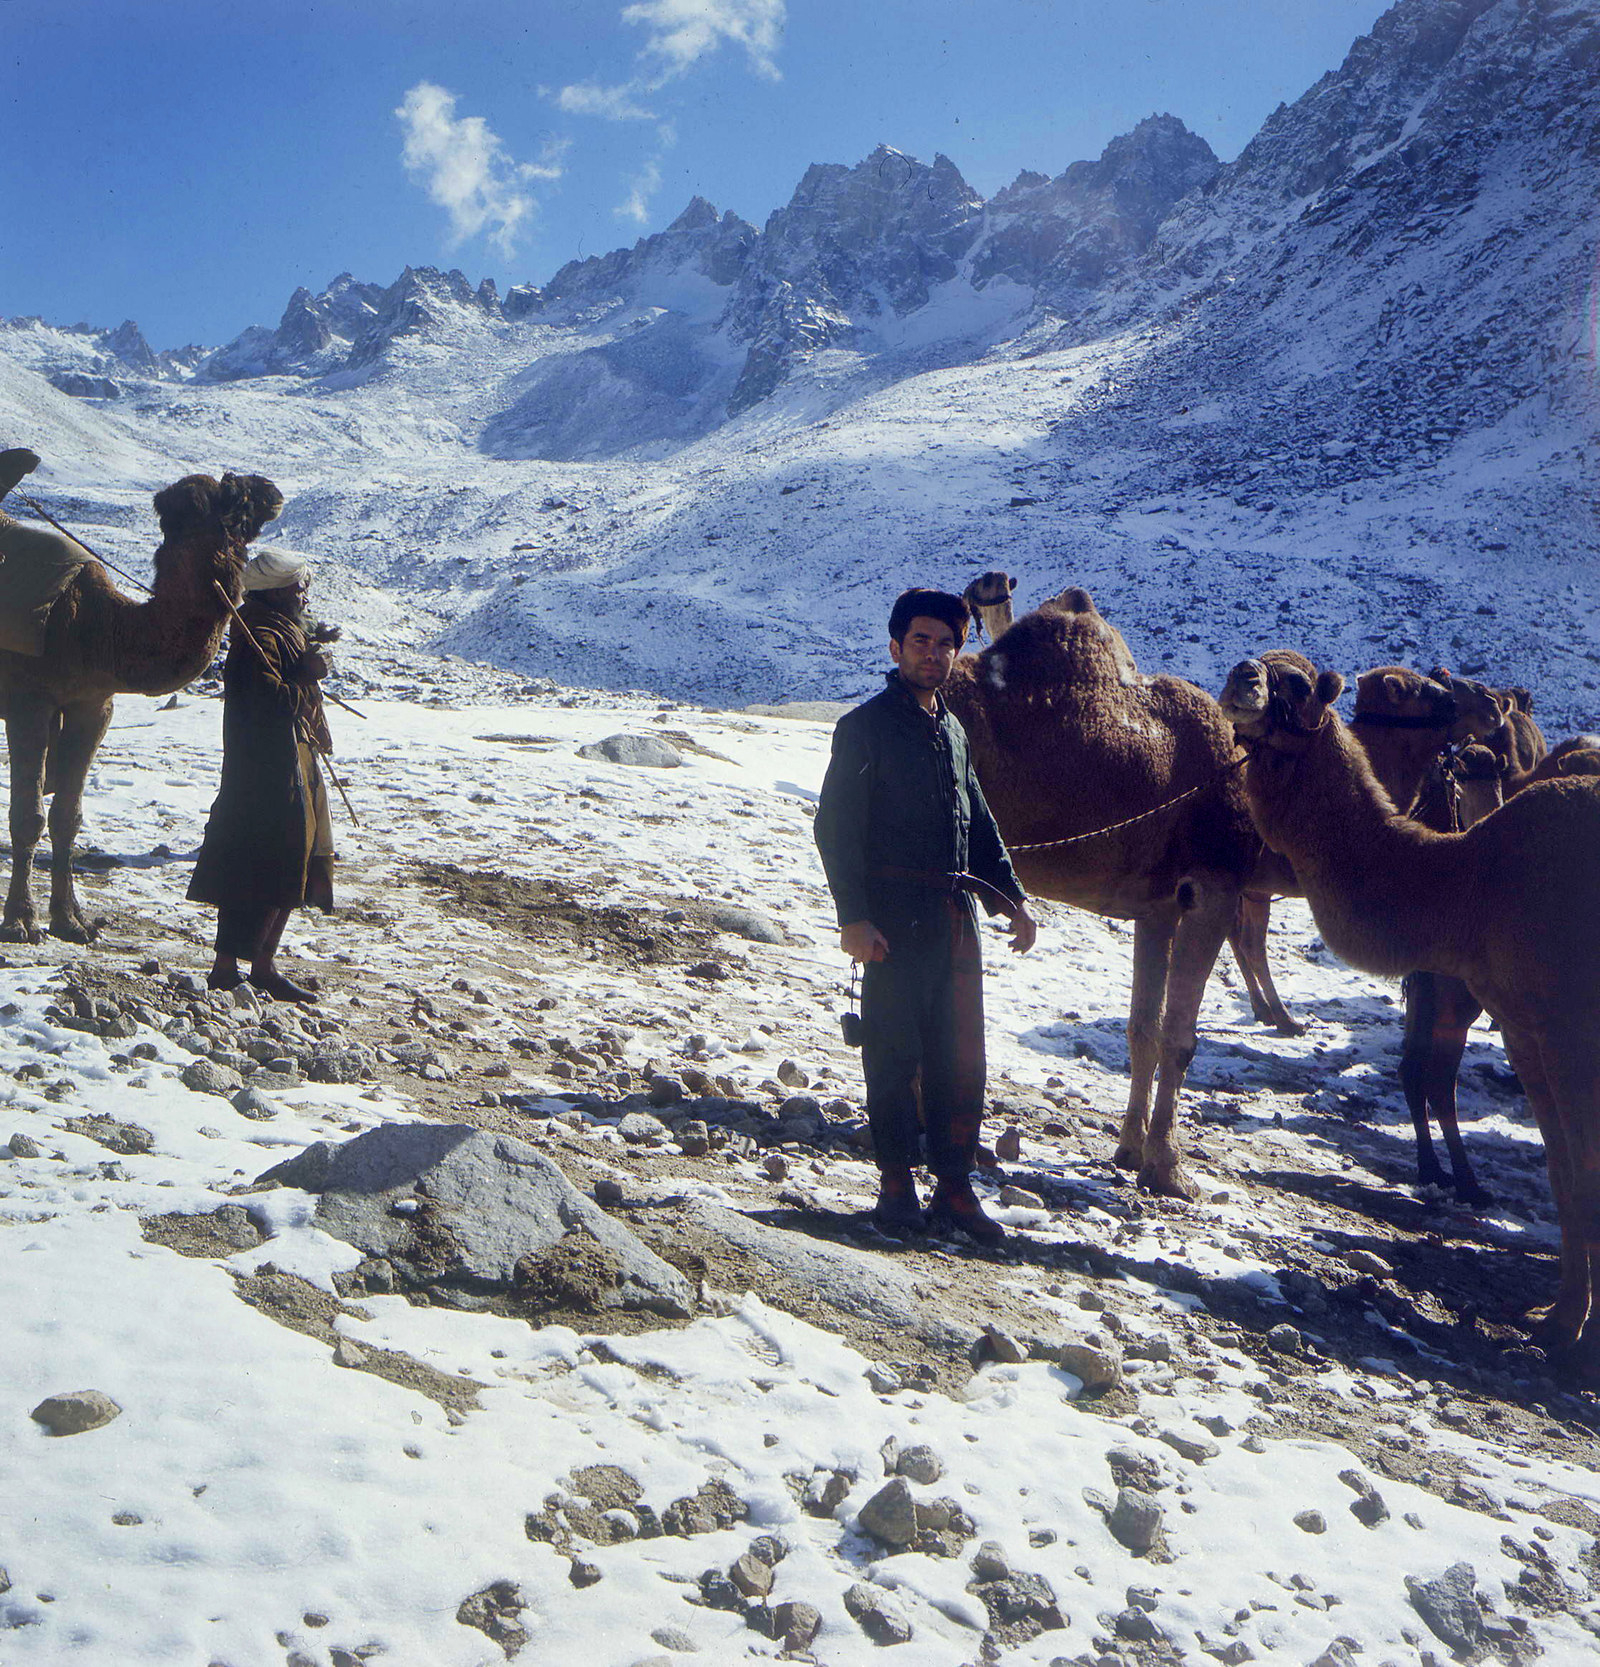 Караван мулов останавливается на привал в заснеженных горах Нуристана, 1970